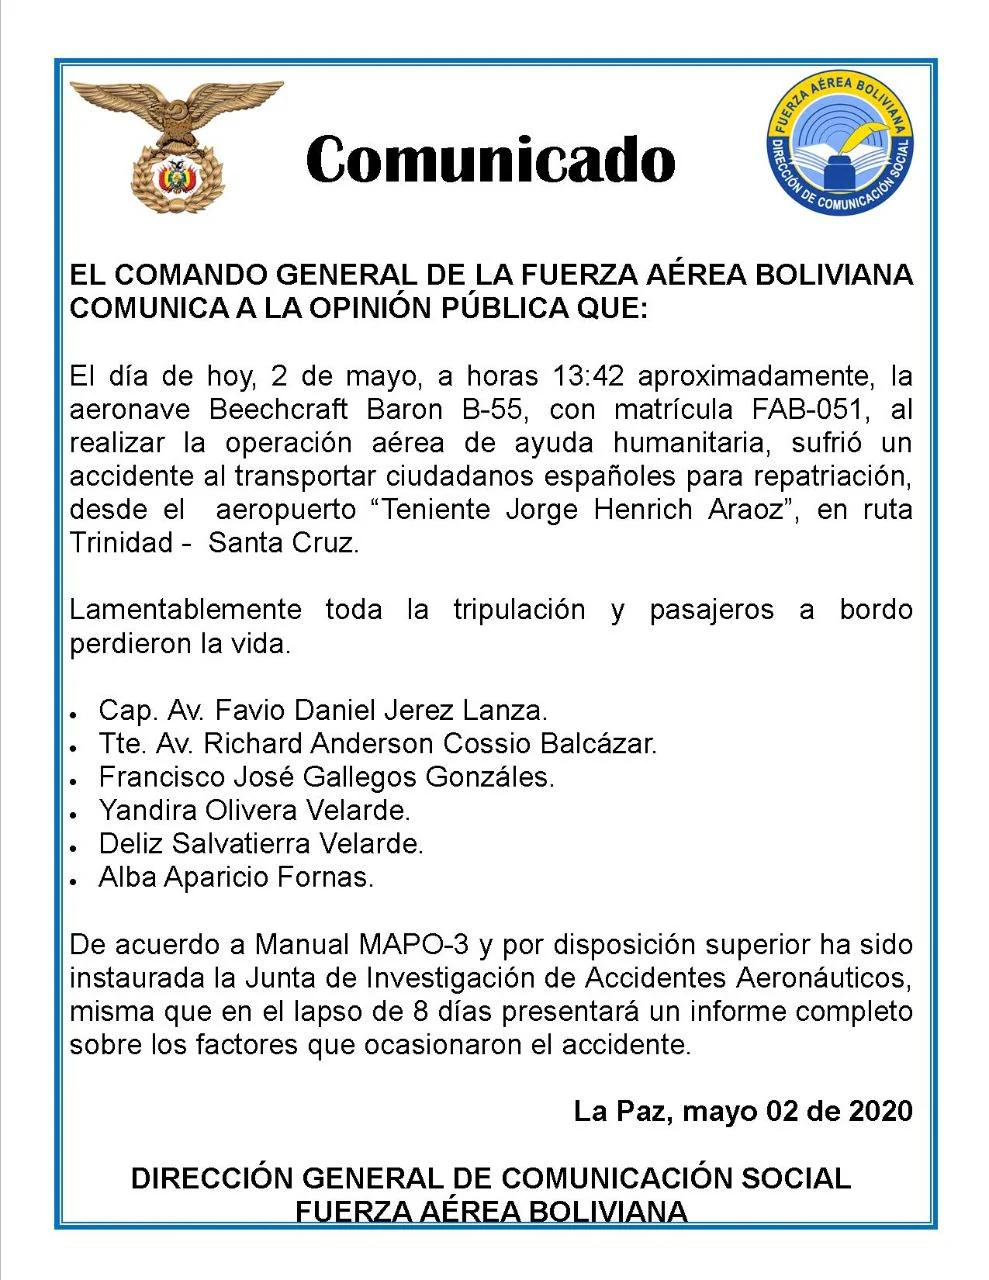 Comunicado de la Fuerza Aérea Boliviana